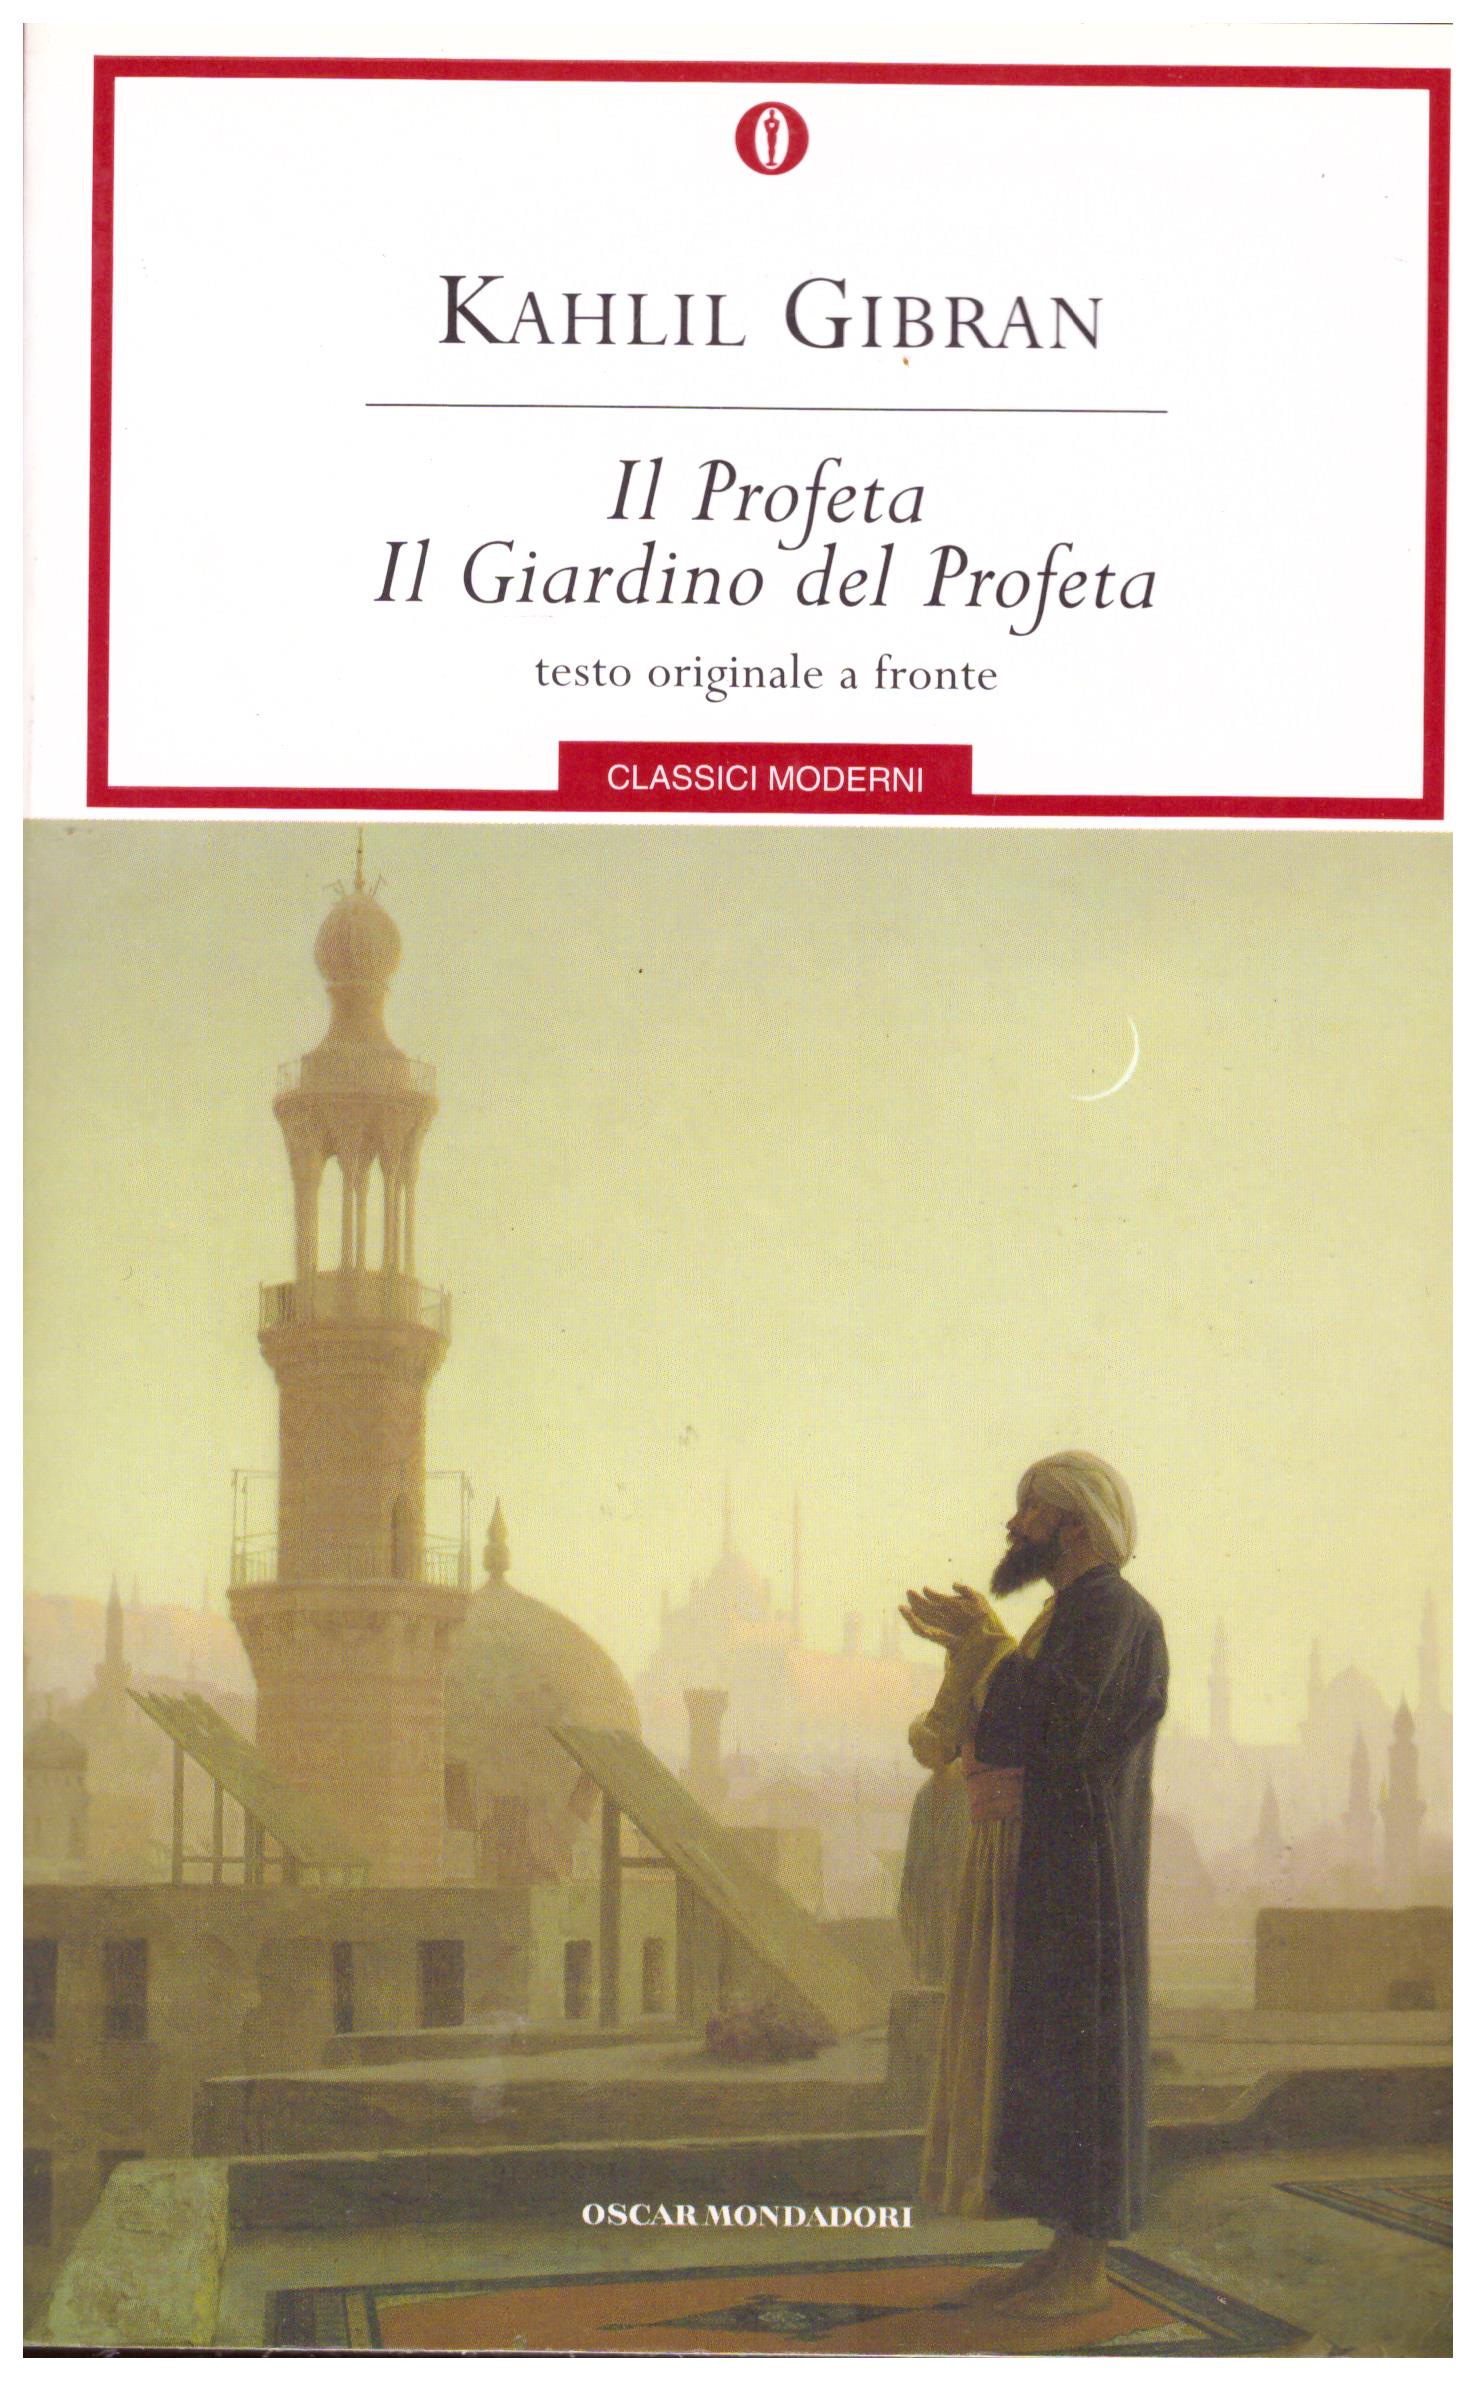 Titolo: Il profeta, il giardino del profeta Autore: Kahlil Gibran  Editore: mondadori, 2009